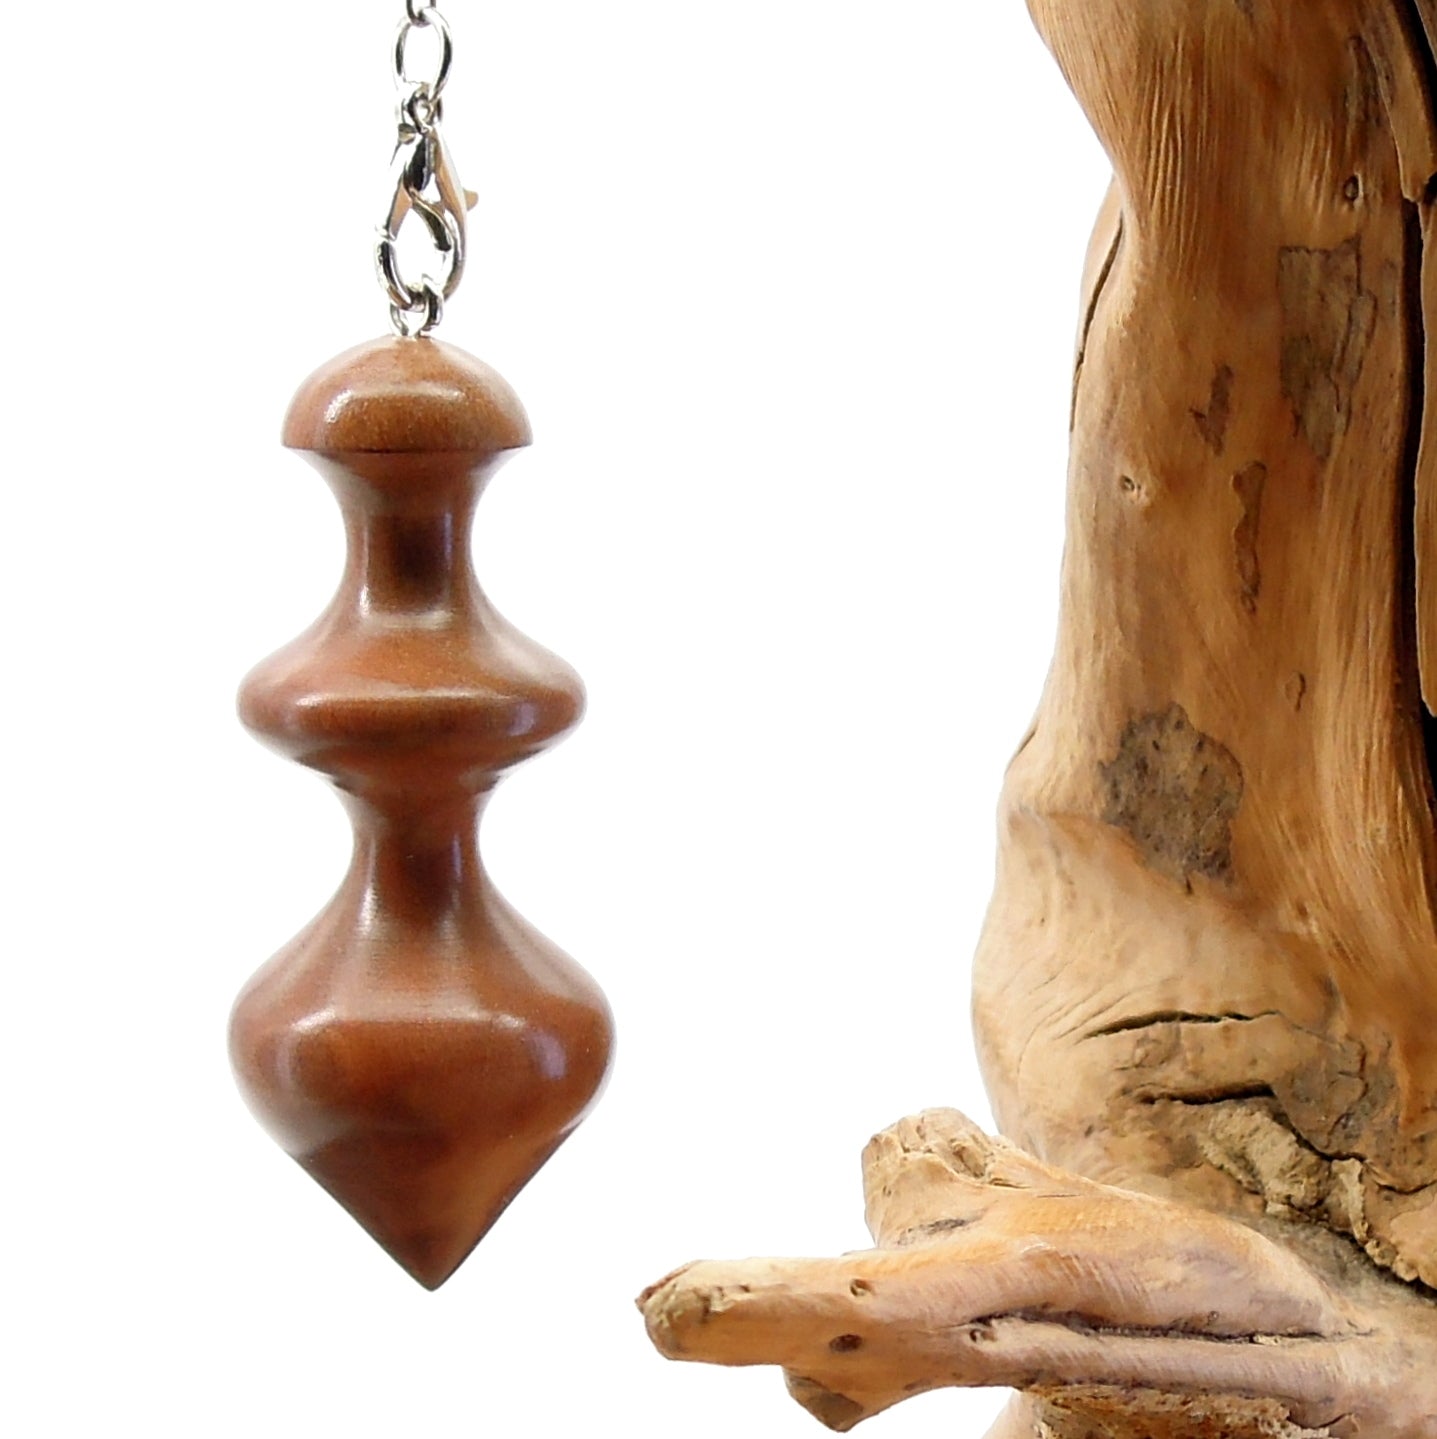 Pendule artisanal de radiesthésie en bois exotique avec chainette.